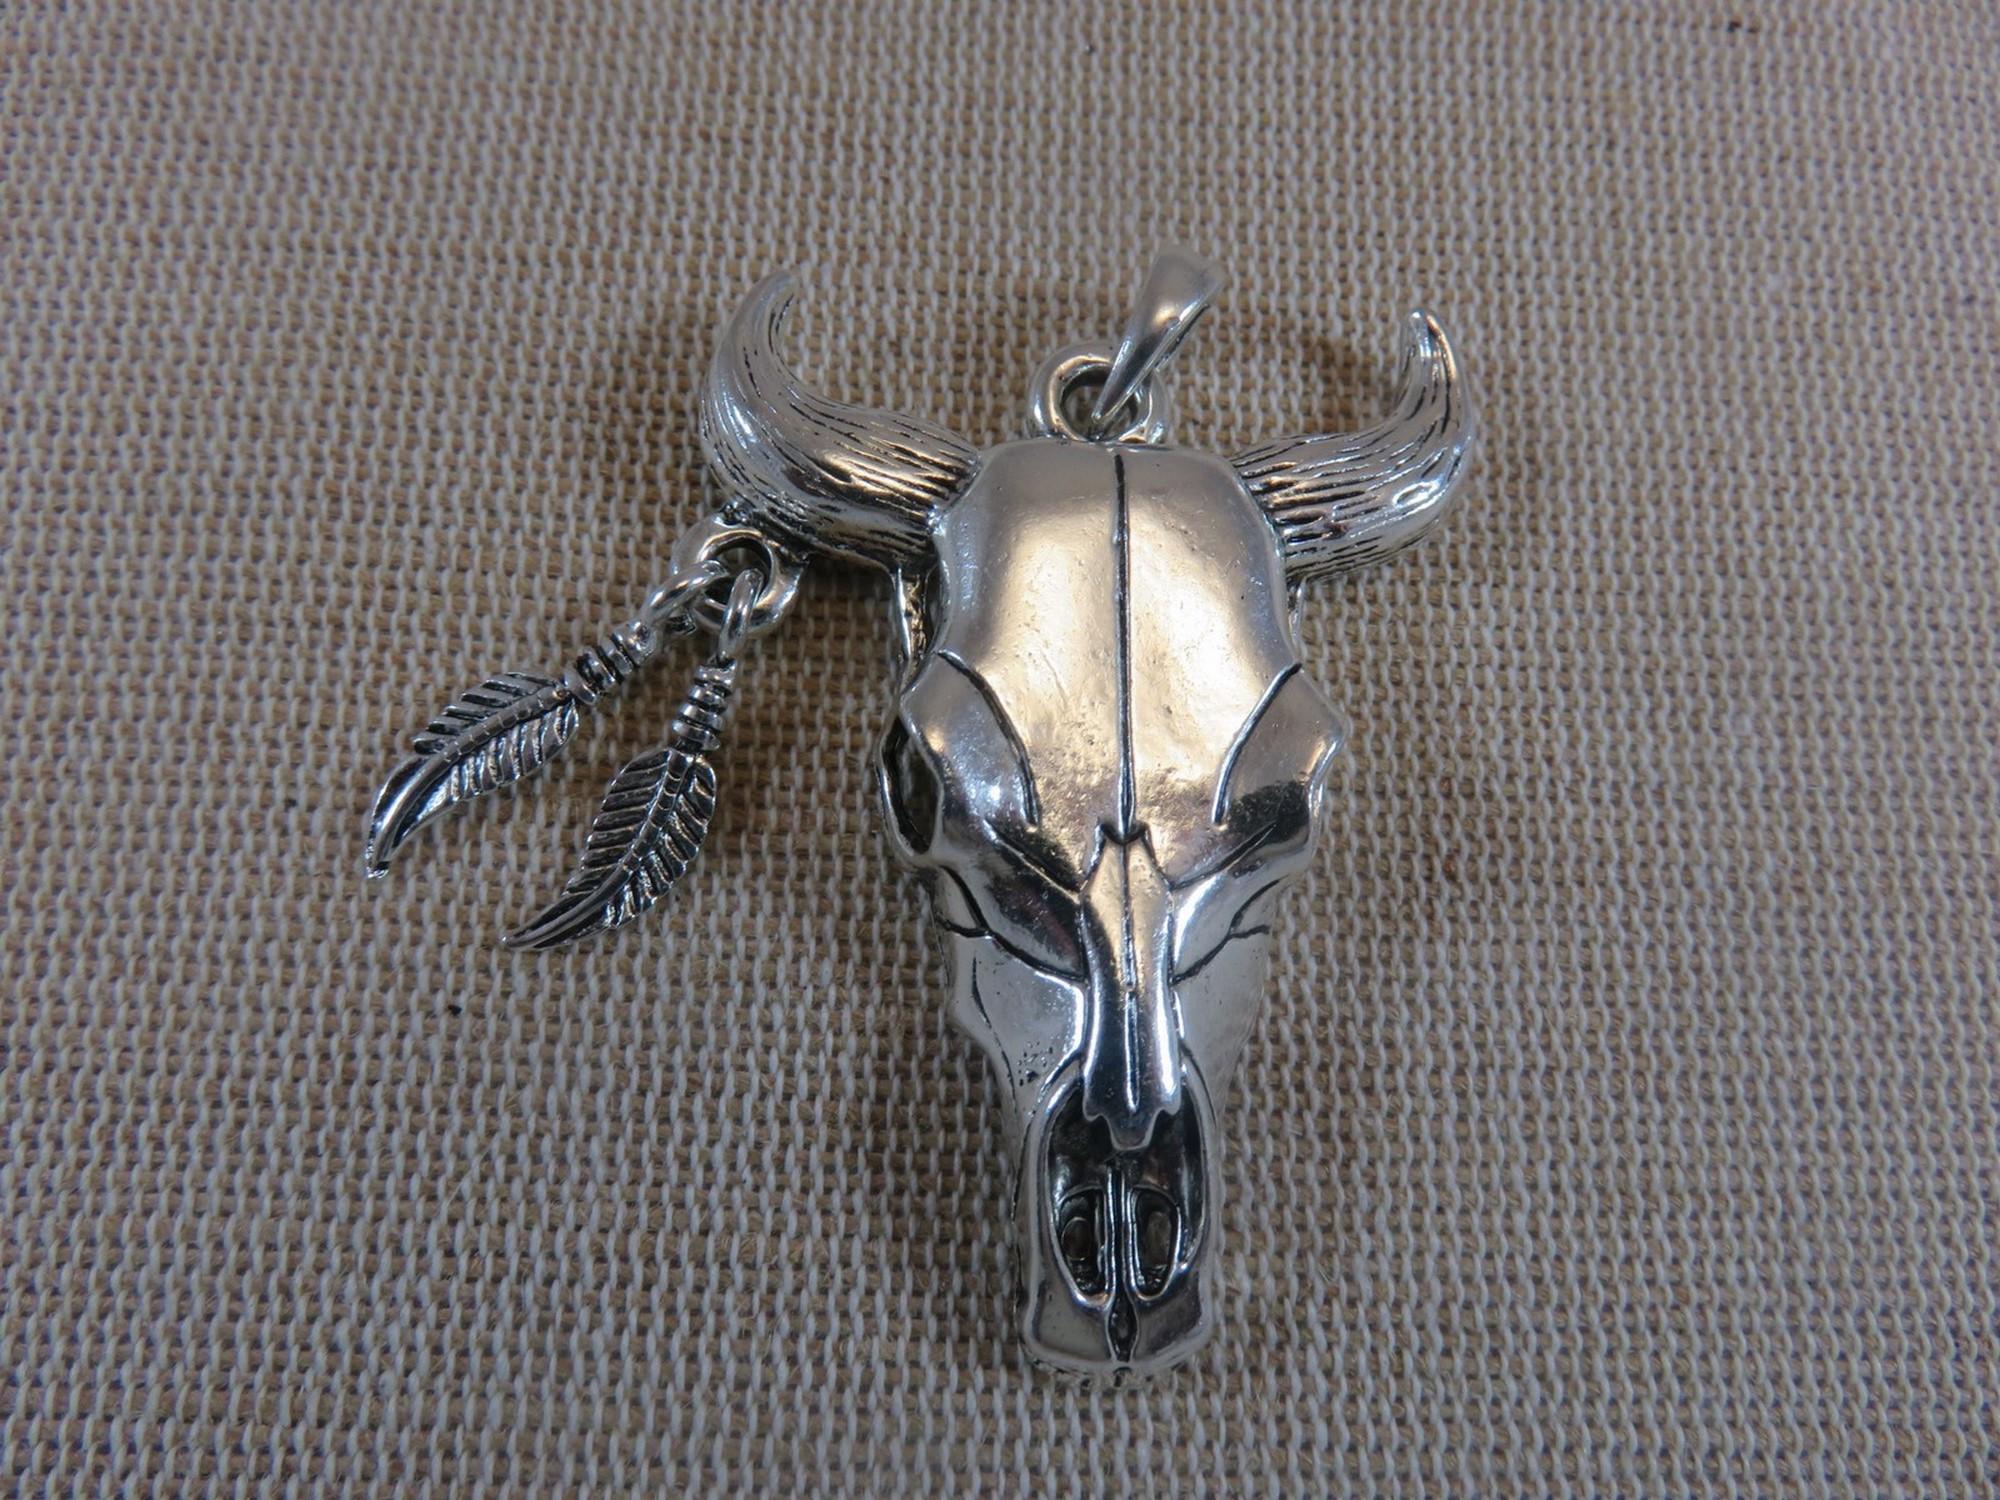 Grand pendentif crane de buffle métal couleur argenté avec bélière